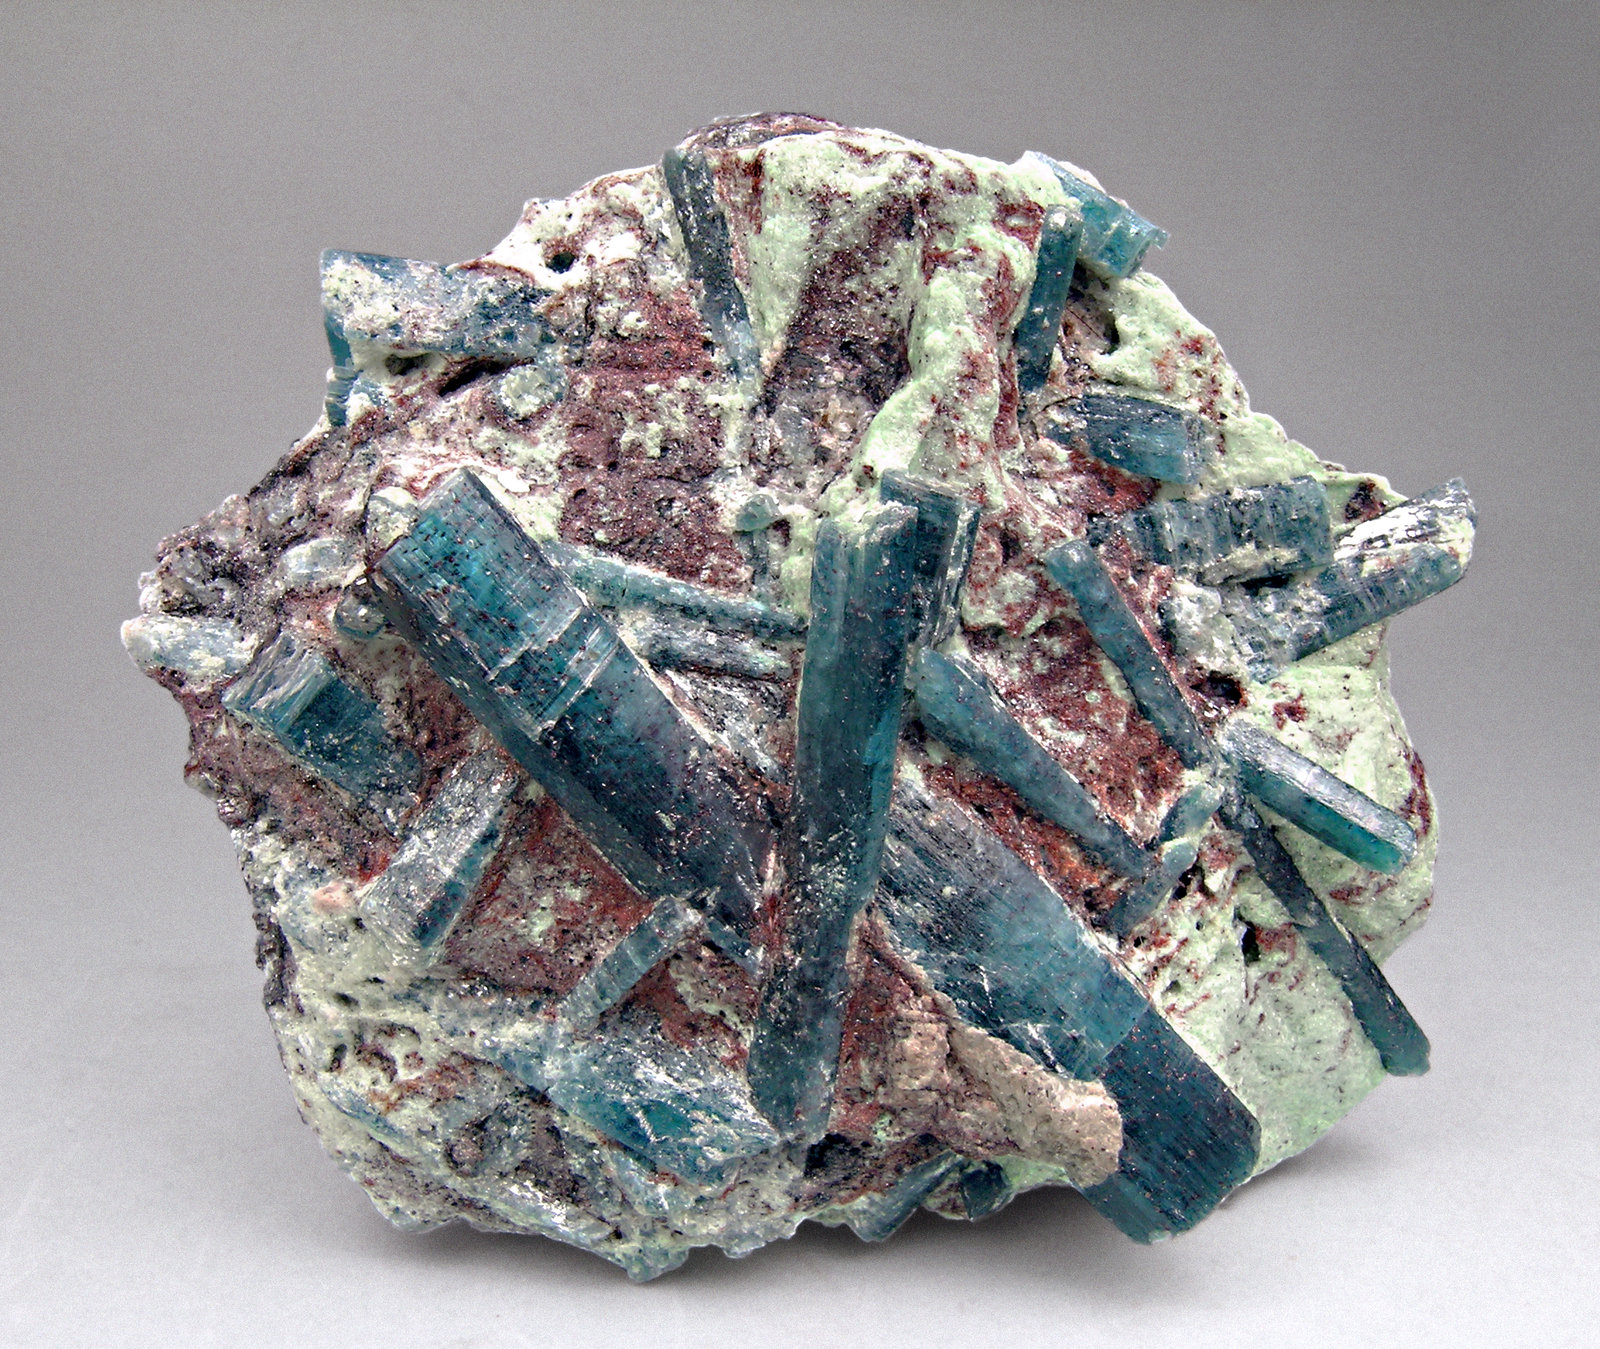 specimens/s_imagesM4/Kyanite-AG76M4f.jpg